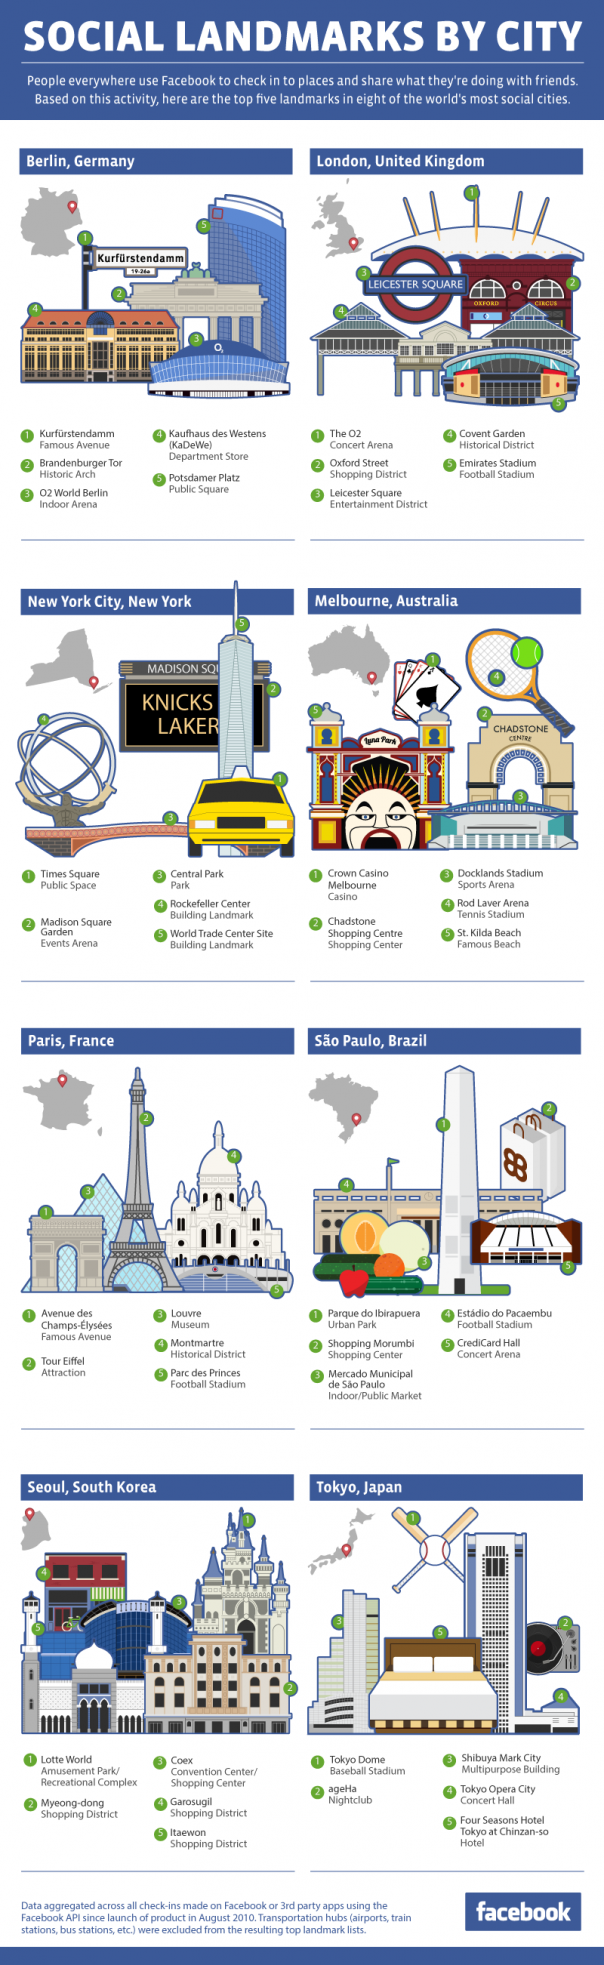 Facebook : Check-in dans les lieux de villes célèbres